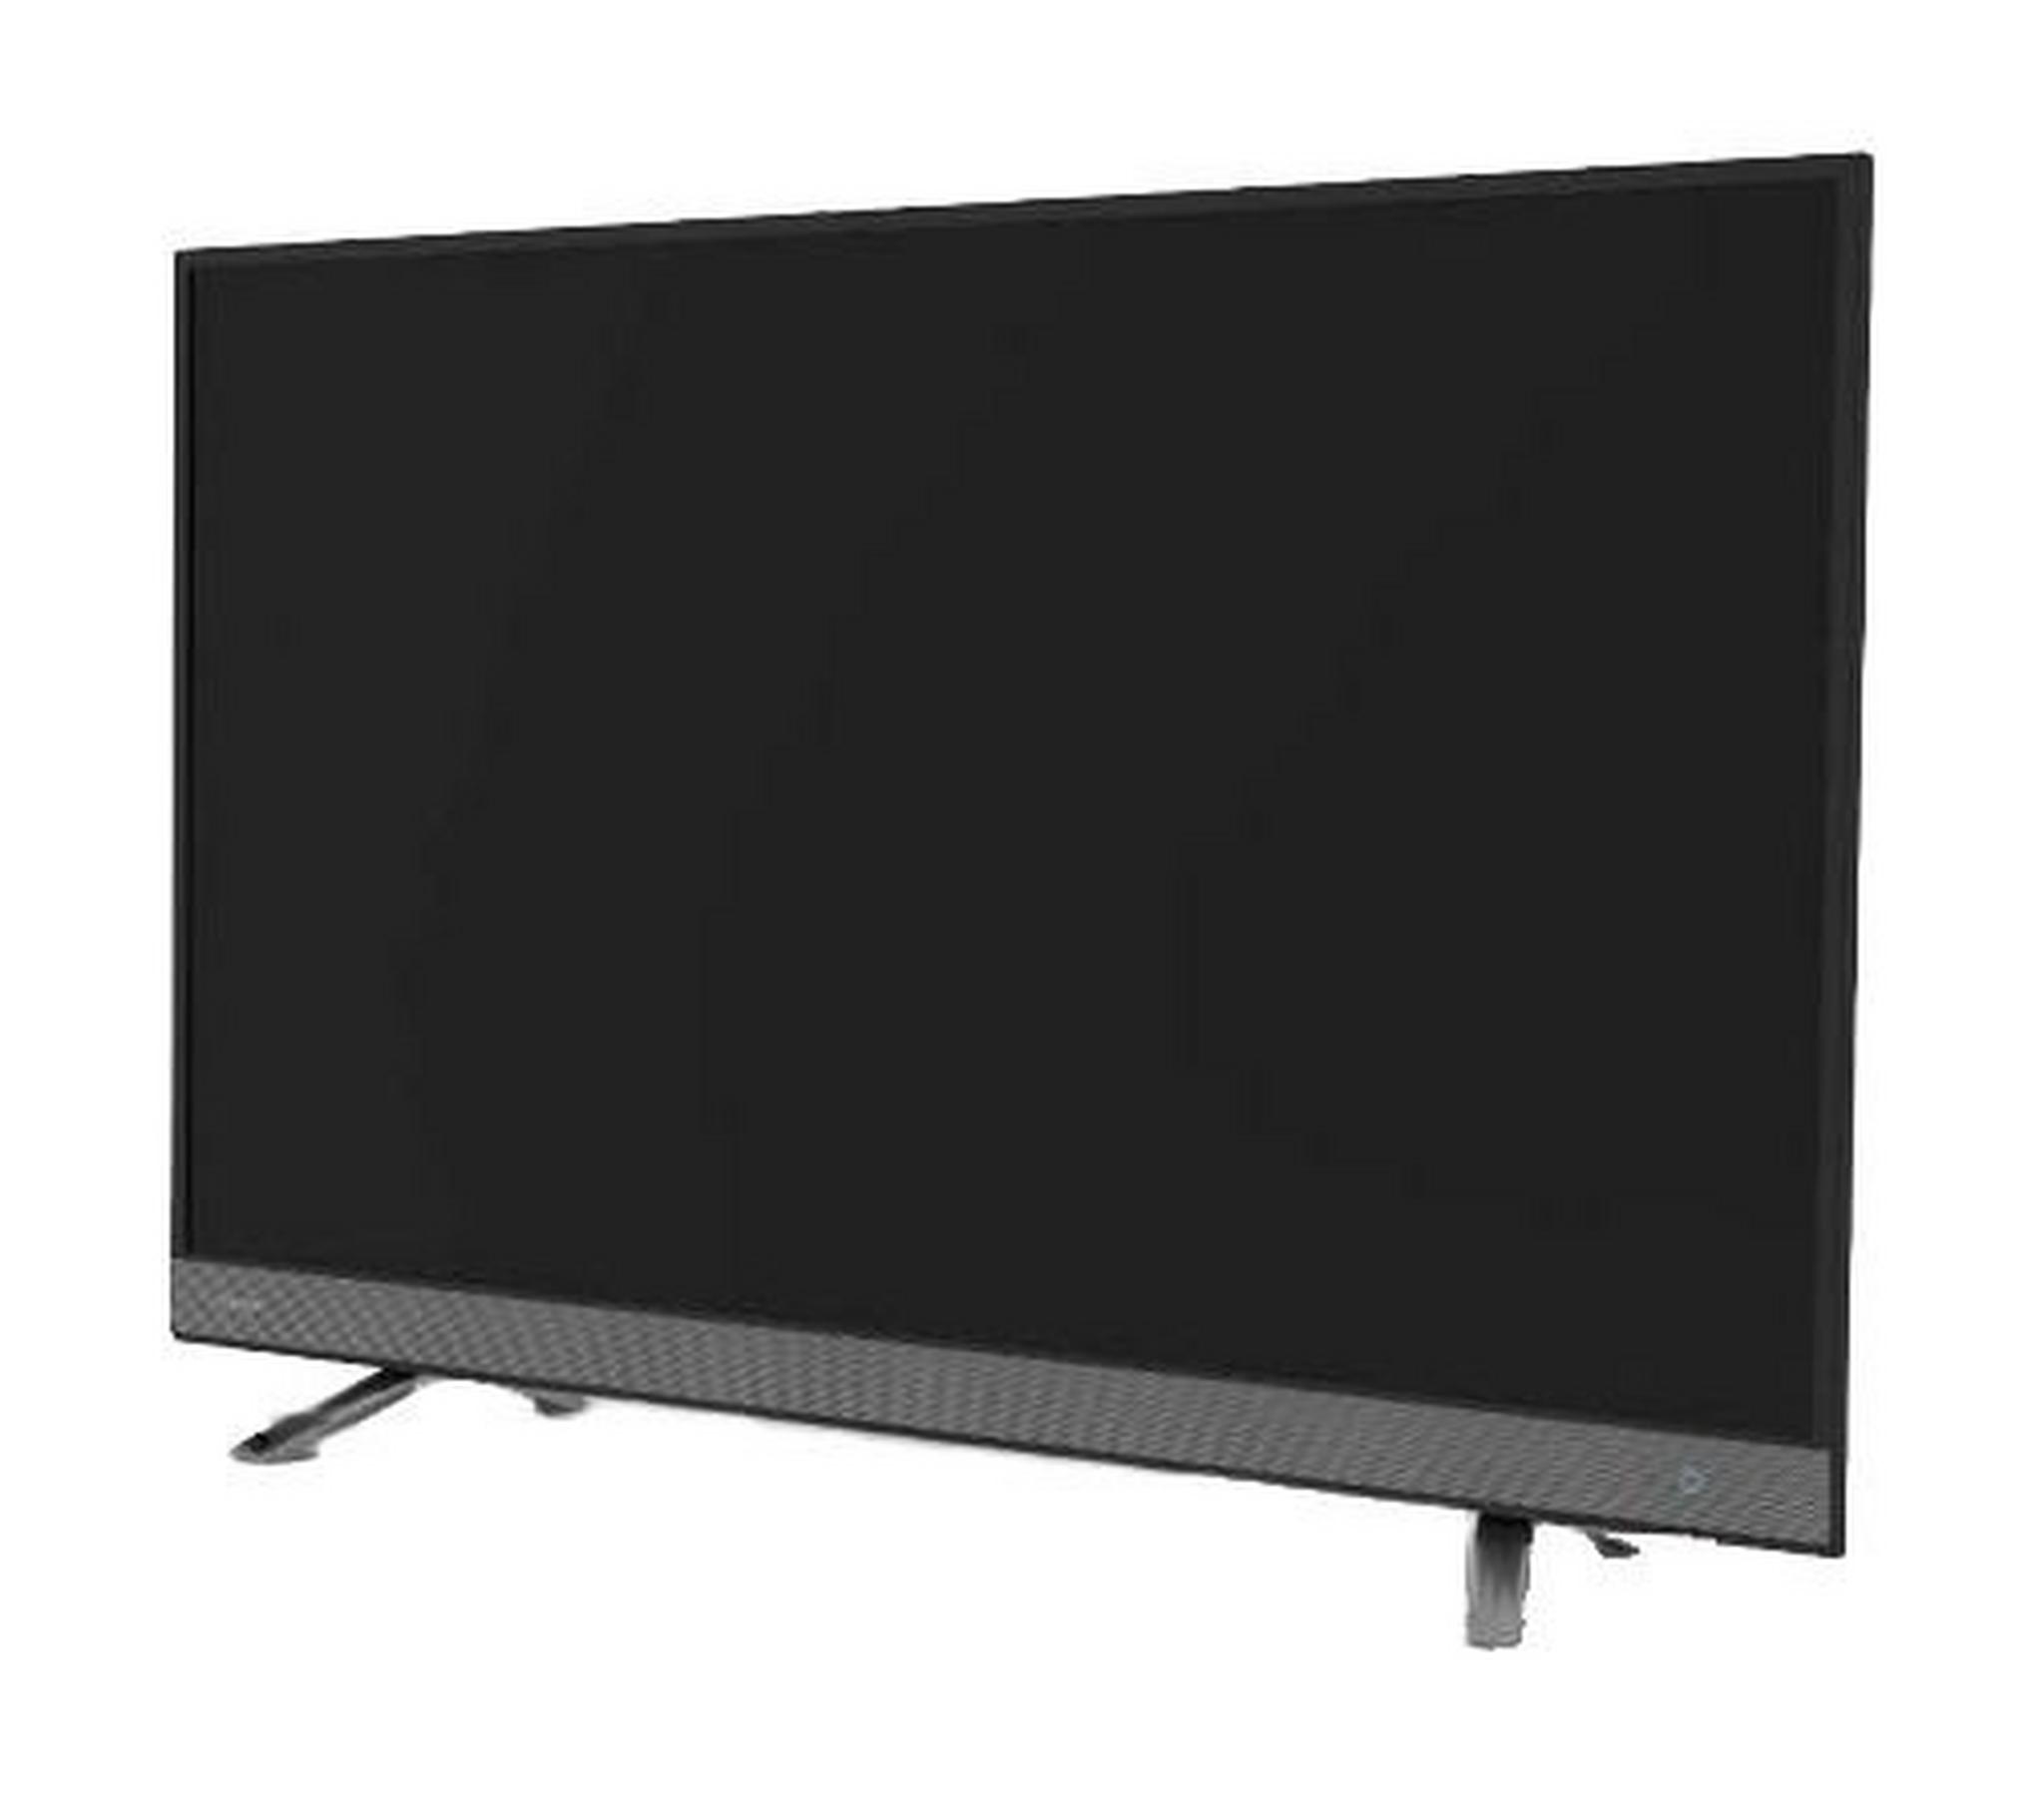 TOSHIBA 49 inch Full HD Smart LED TV - 49L5750EE